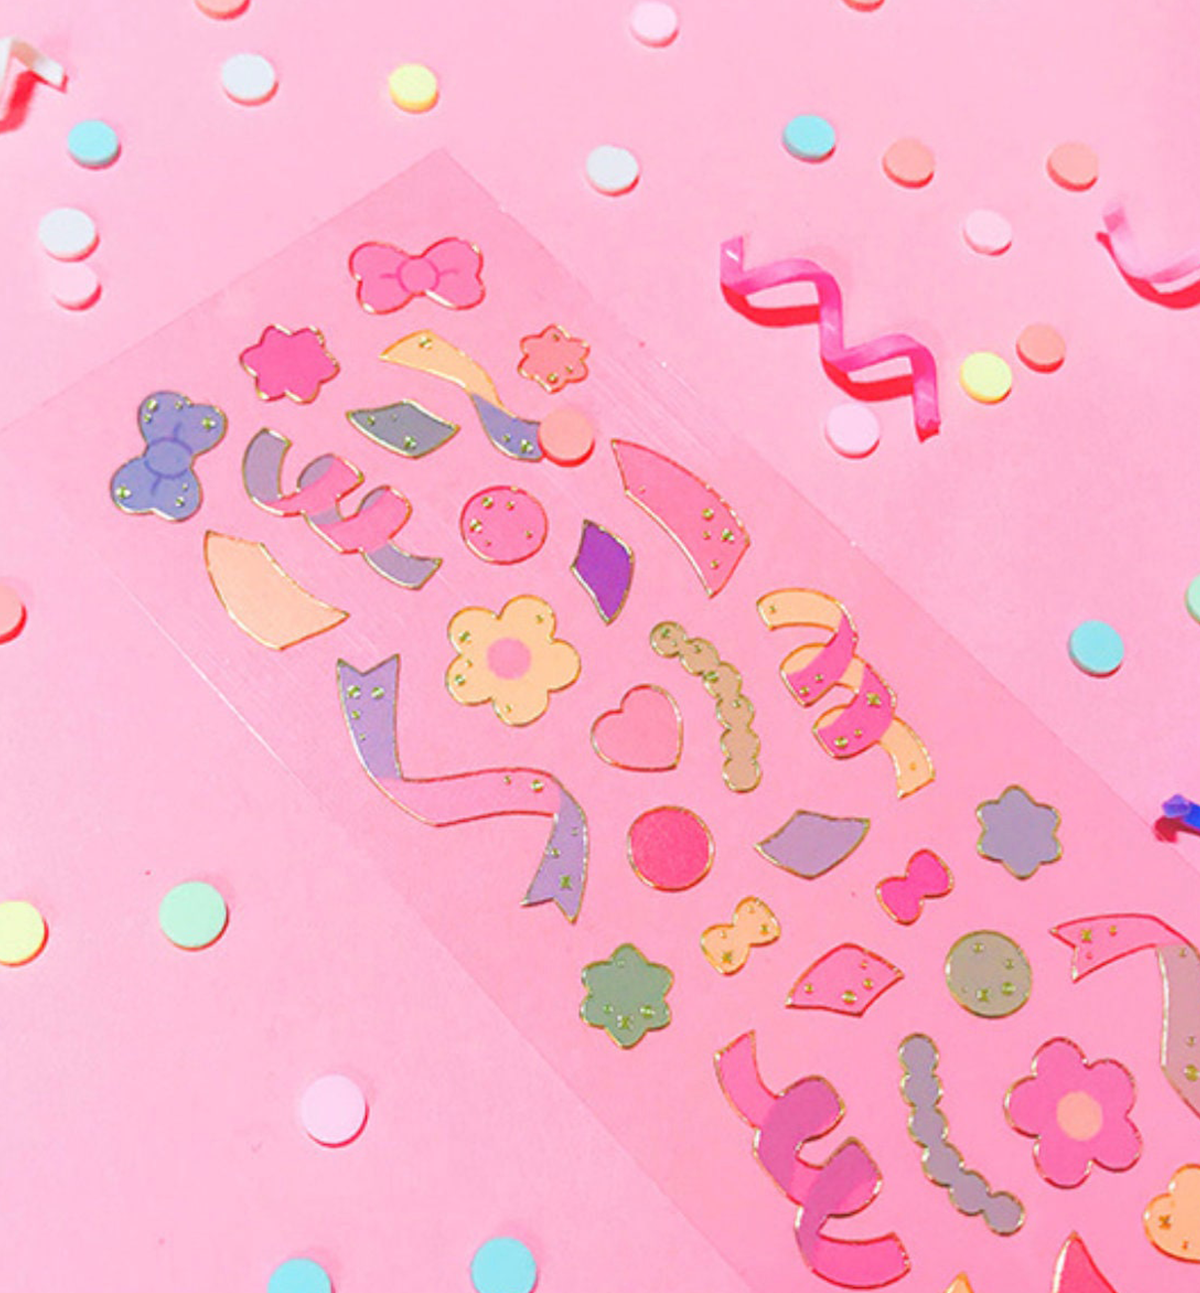 Colorful Confetti Seal Sticker